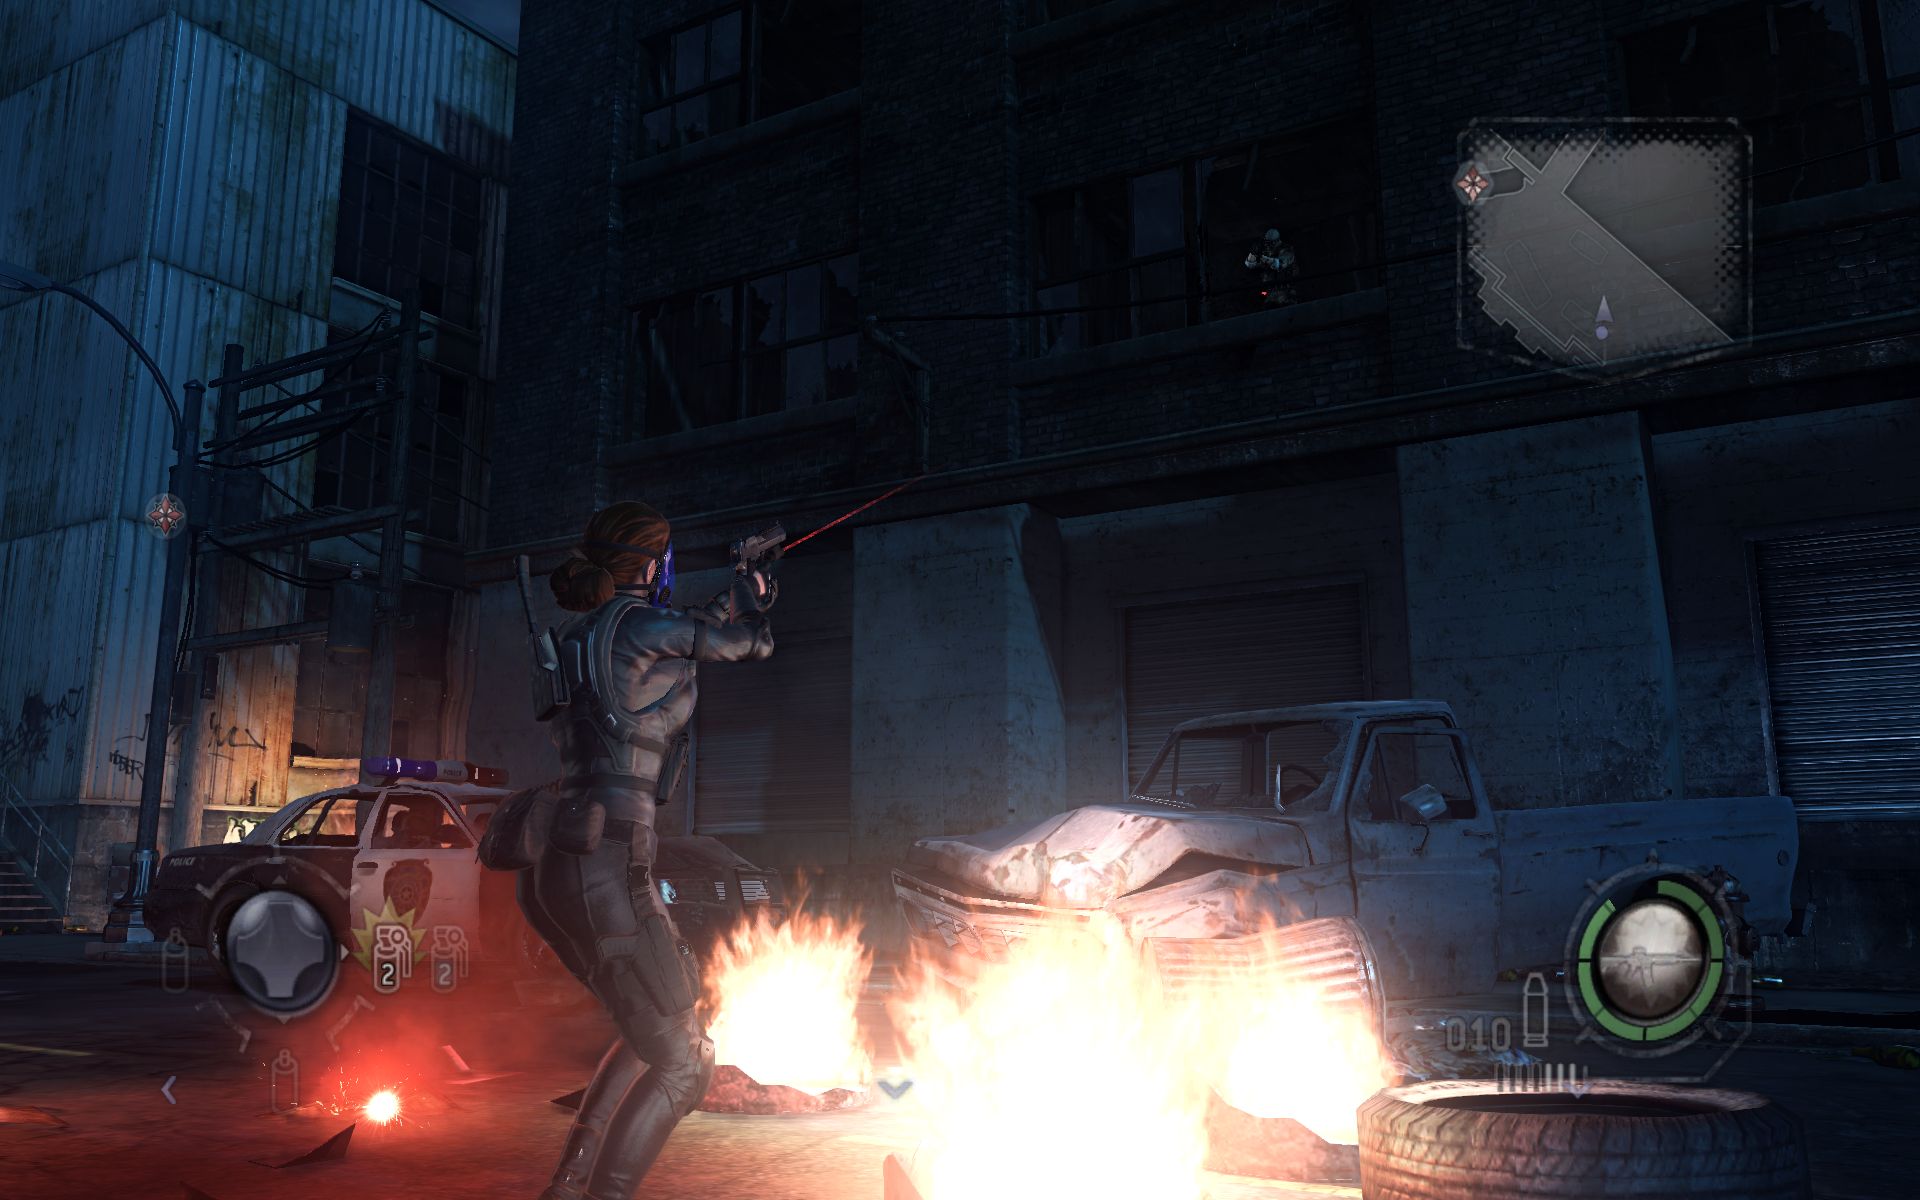 Immagine pubblicata in relazione al seguente contenuto: Capcom rilascia Resident Evil: Operation Raccoon City per PC | Nome immagine: news17254_3.jpg